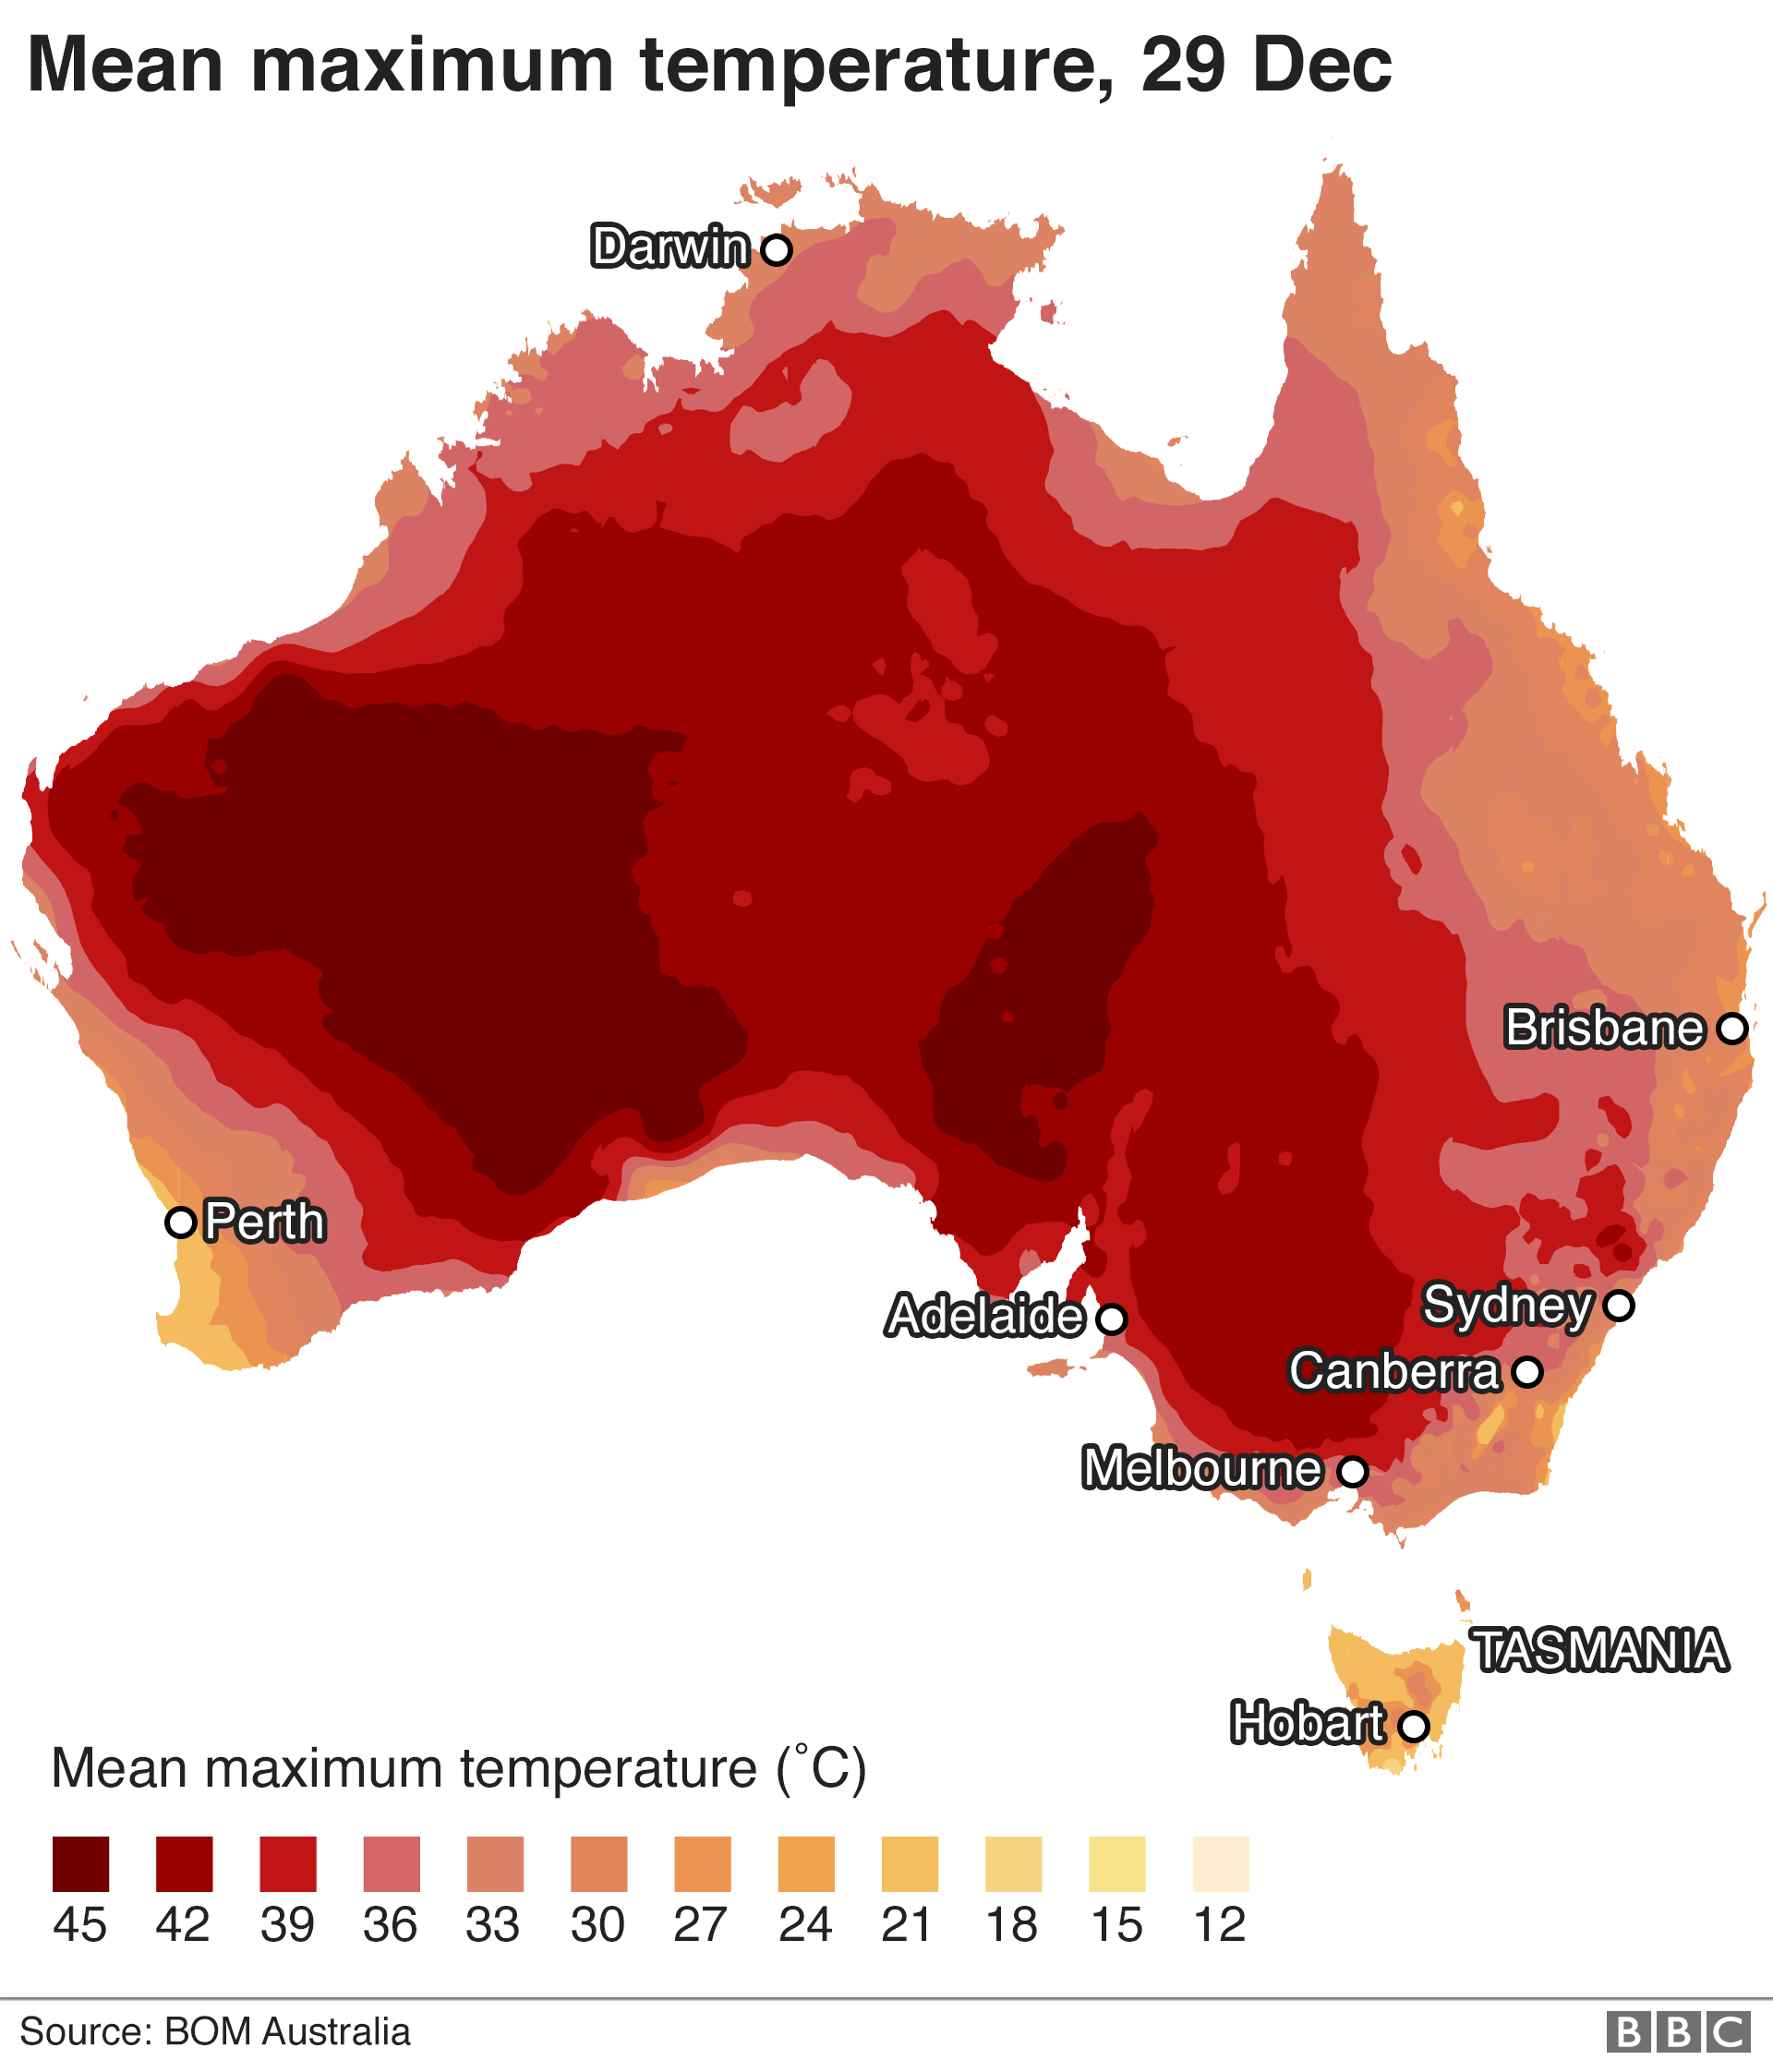 Map showing mean maximum temperatures across Australia for 29 December 2019